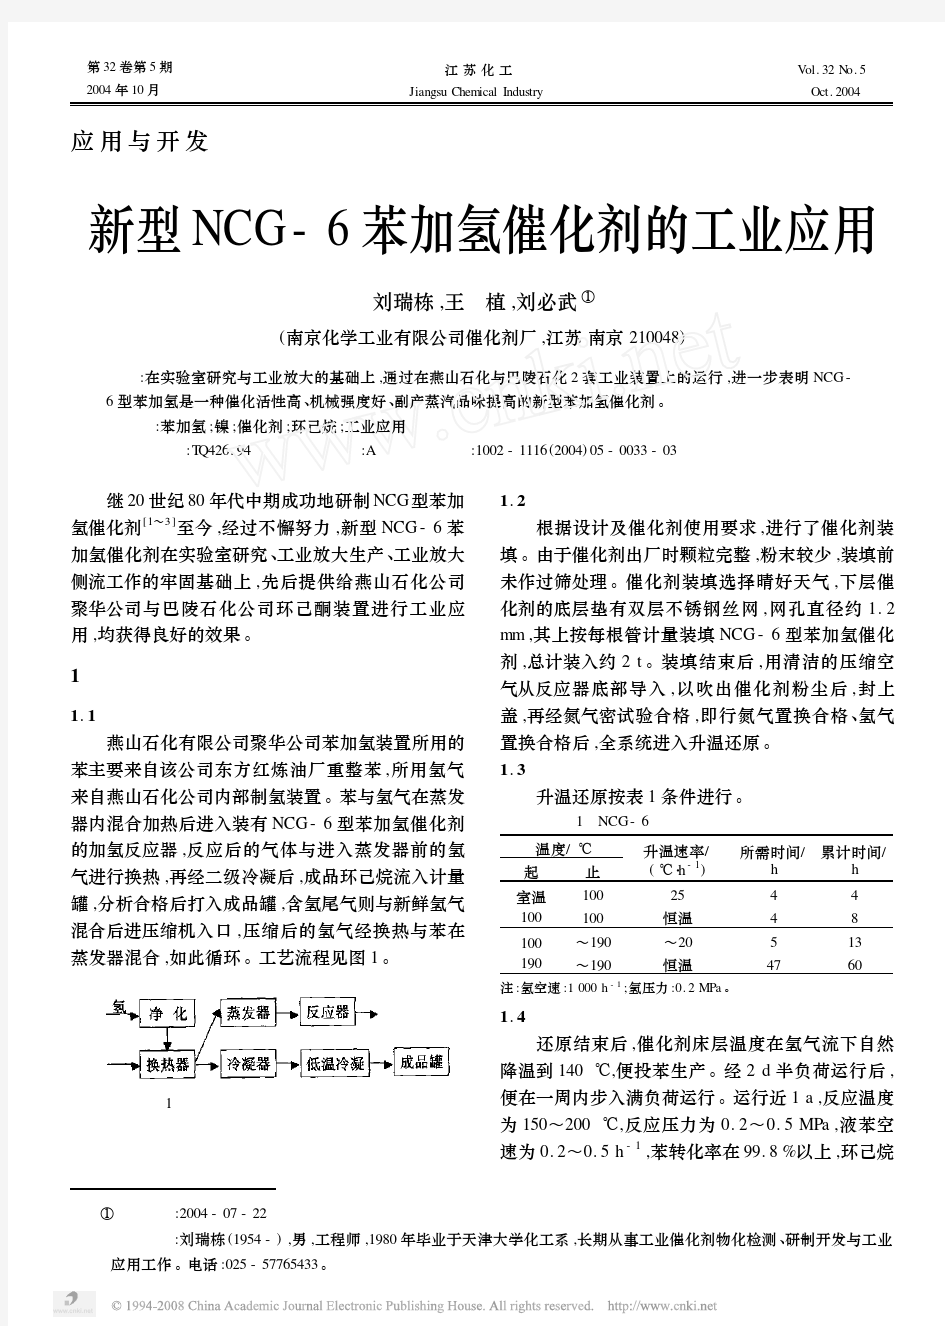 新型NCG_6苯加氢催化剂的工业应用